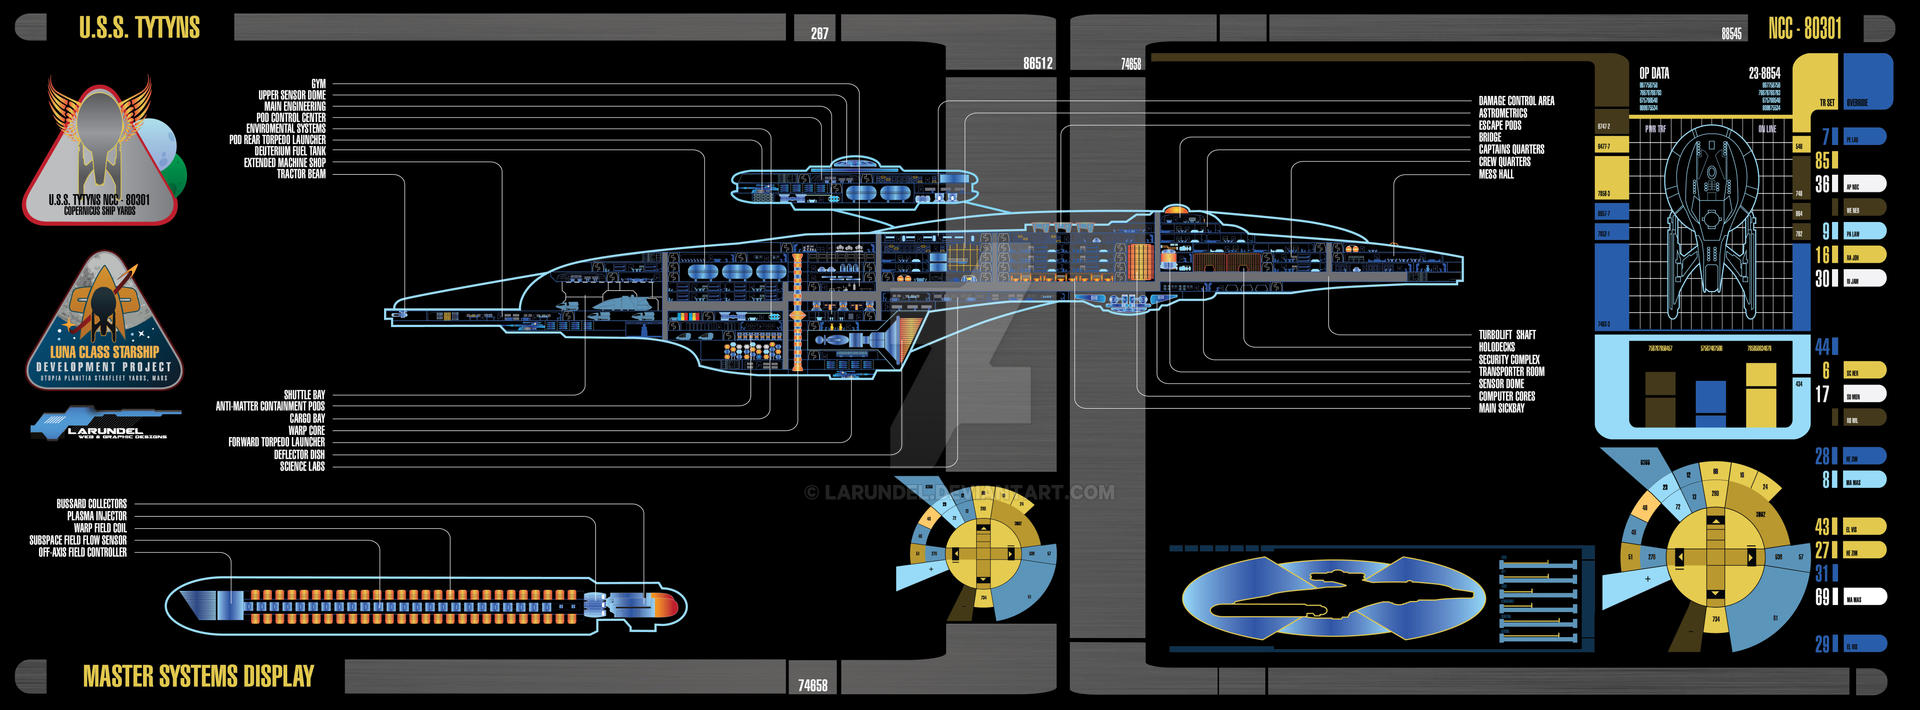 MSD Luna Class (Weapons Pod) by larundel on DeviantArt